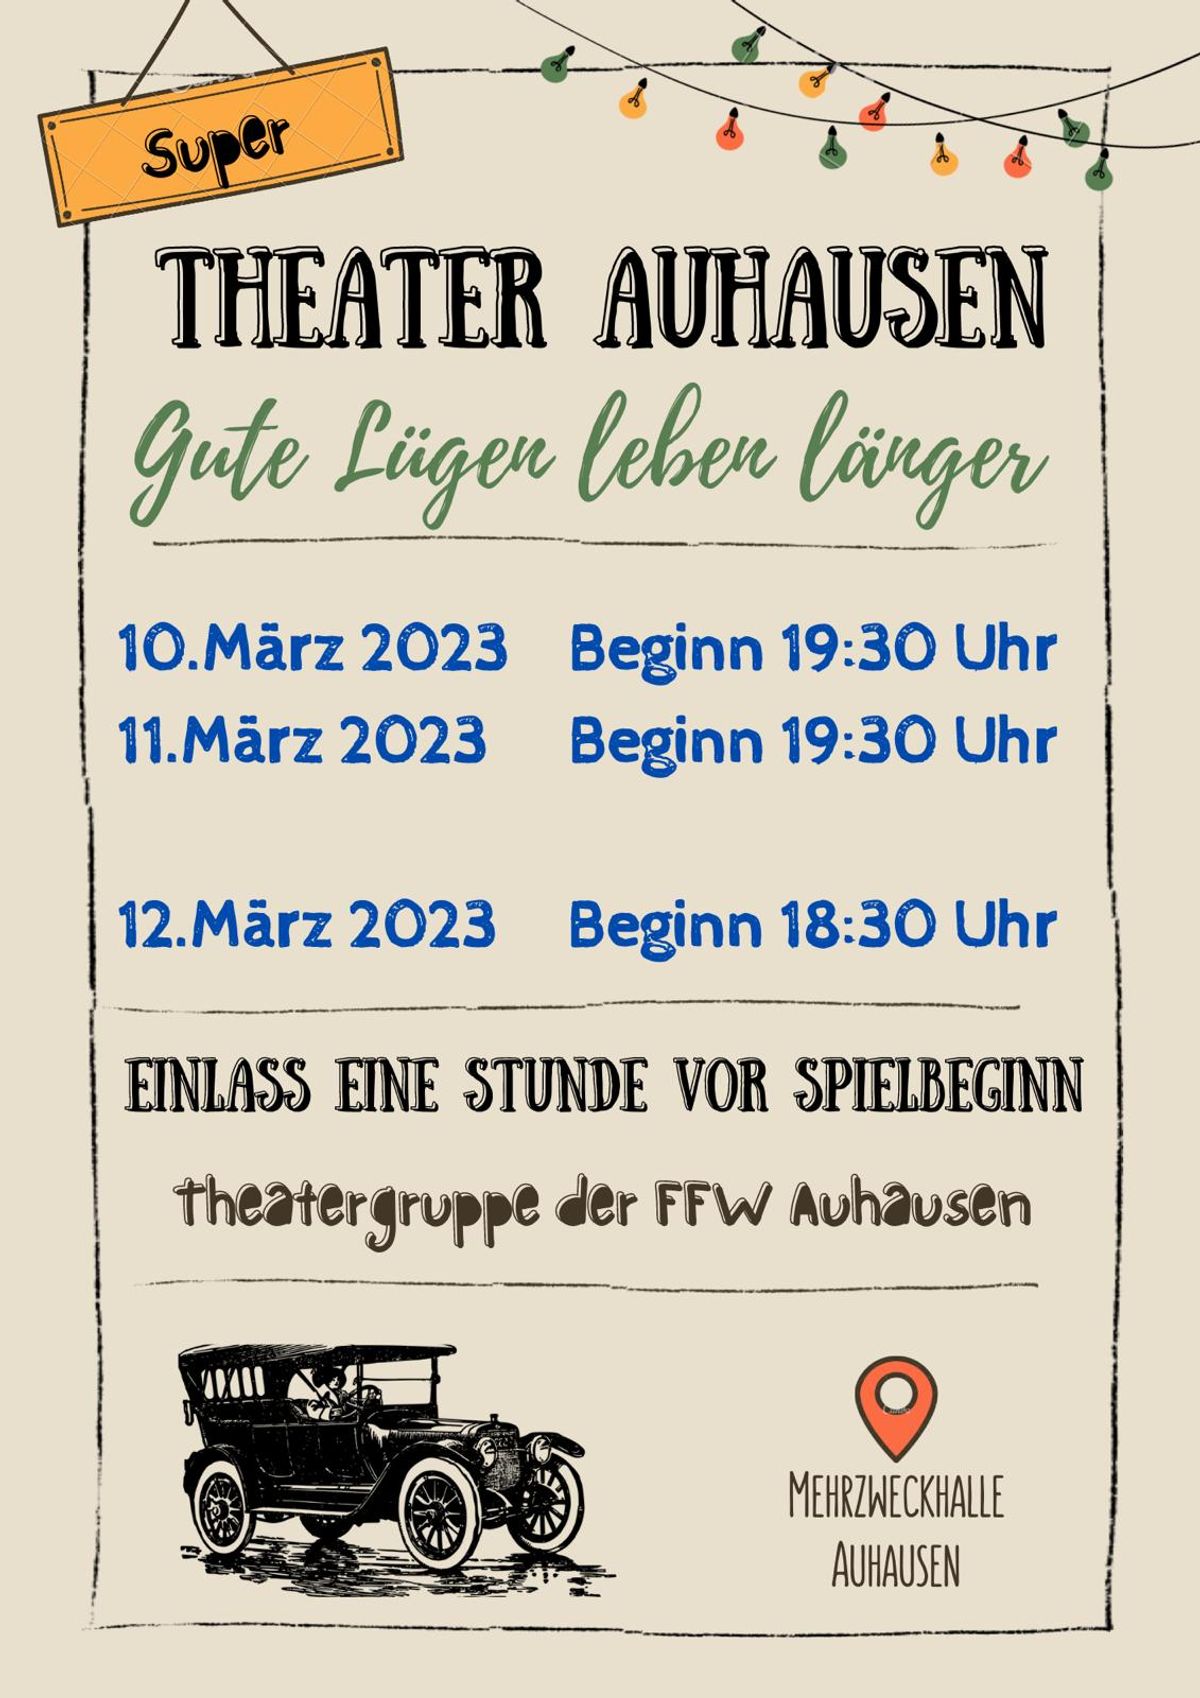 FFW Auhausen - Flyer Theater Auhausen